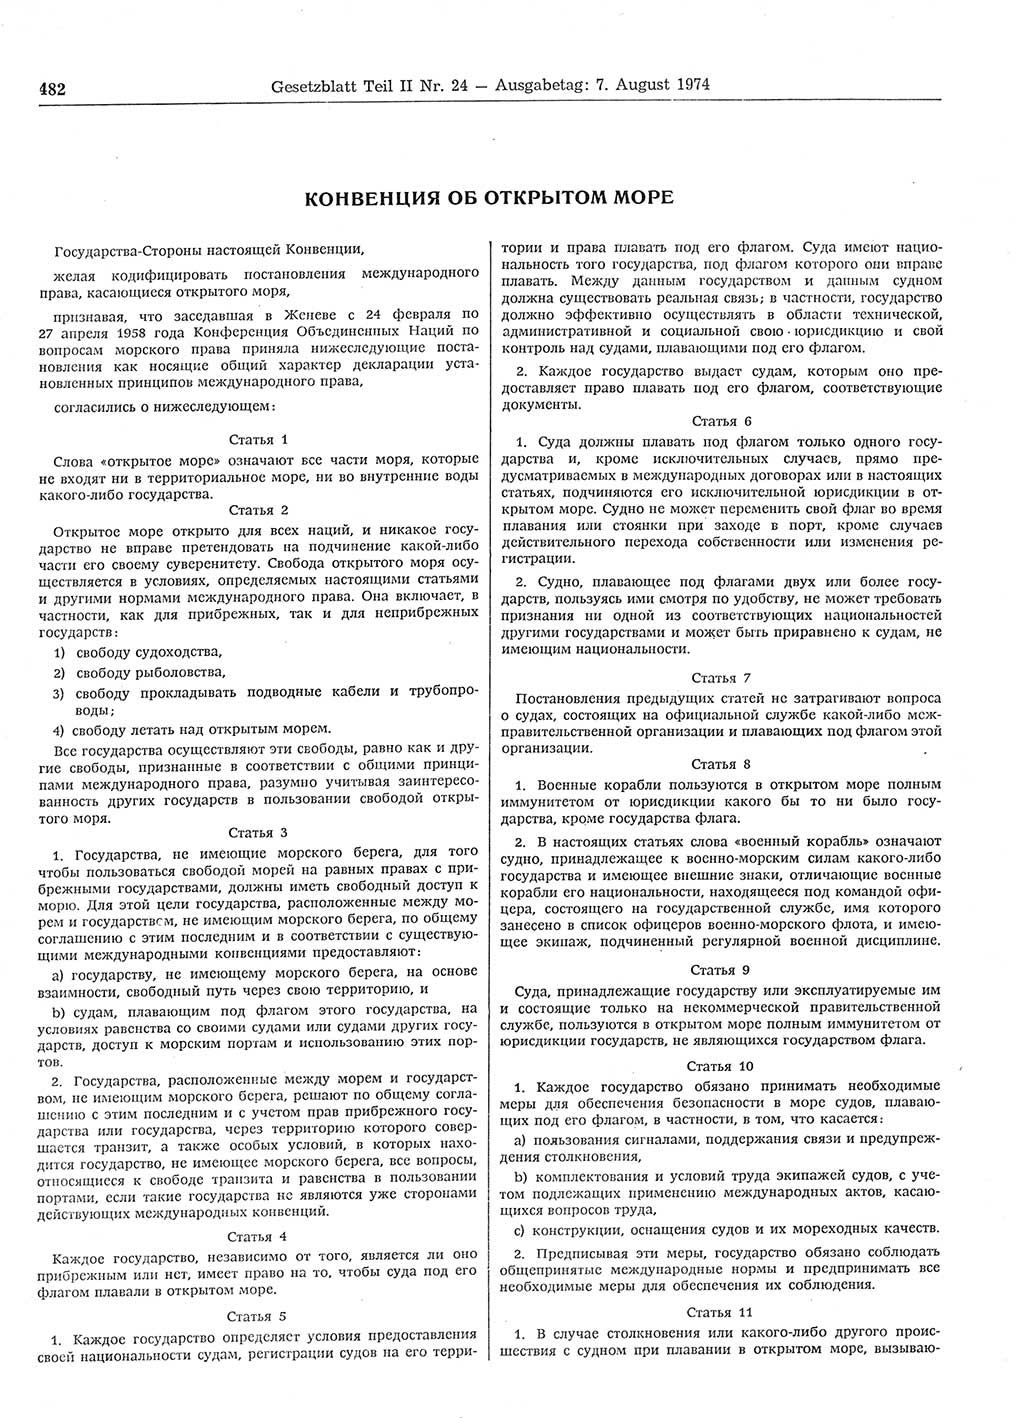 Gesetzblatt (GBl.) der Deutschen Demokratischen Republik (DDR) Teil ⅠⅠ 1974, Seite 482 (GBl. DDR ⅠⅠ 1974, S. 482)